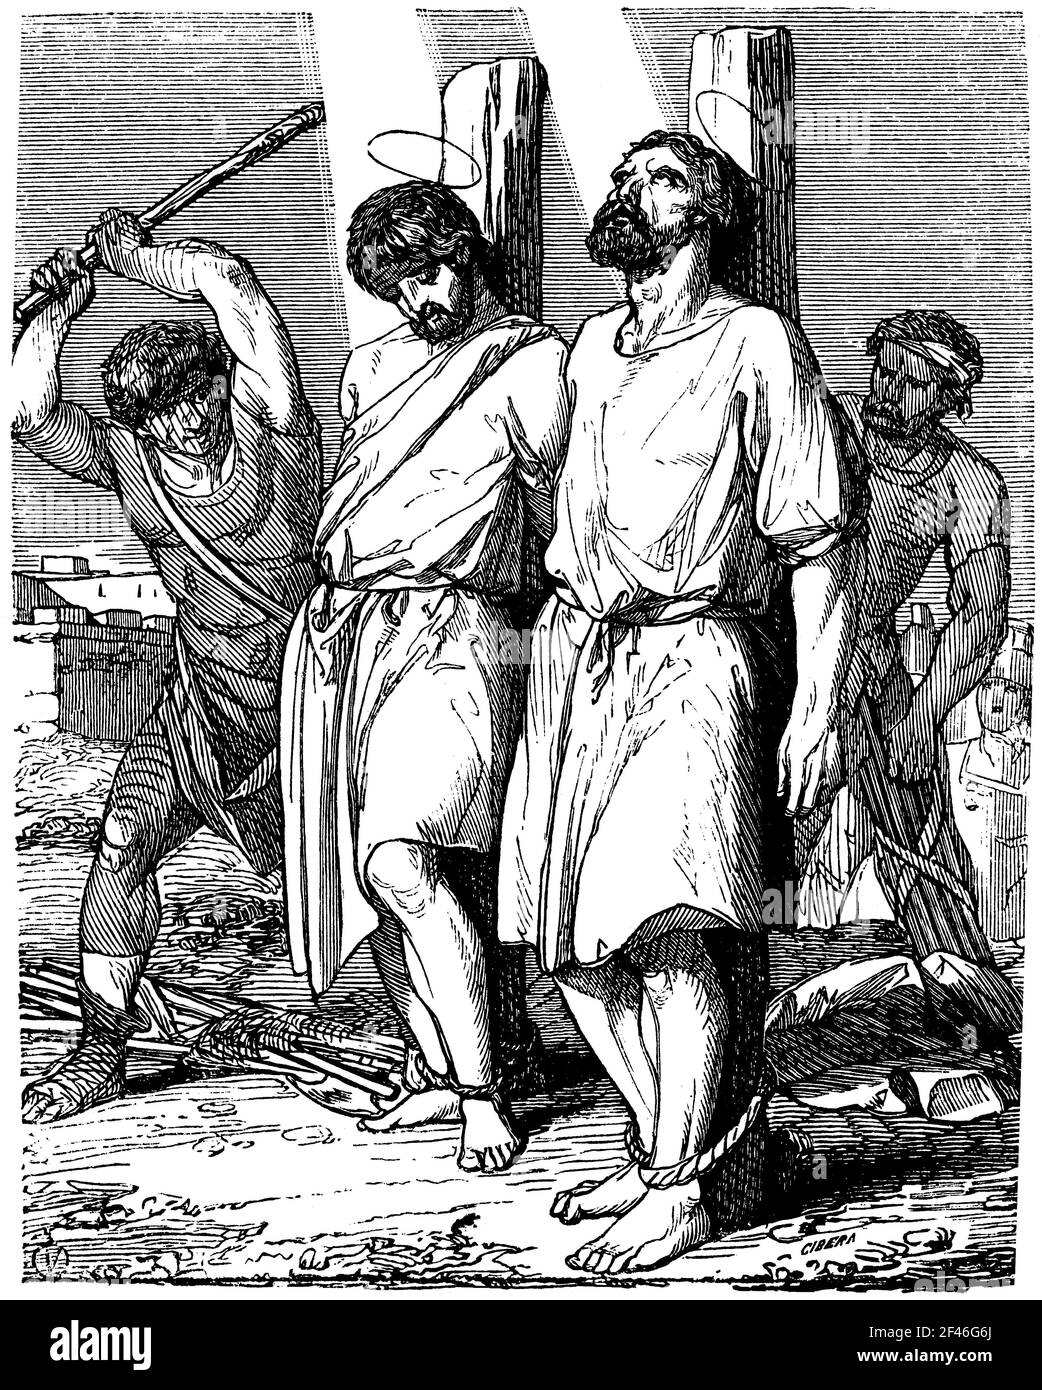 San Tiburcio (?-229) y San Valeriano (177-229), hermanos romanos, ejecutados por enterrar los cuerpos de cristianos martirizados. Grabado de 1852. Stock Photo